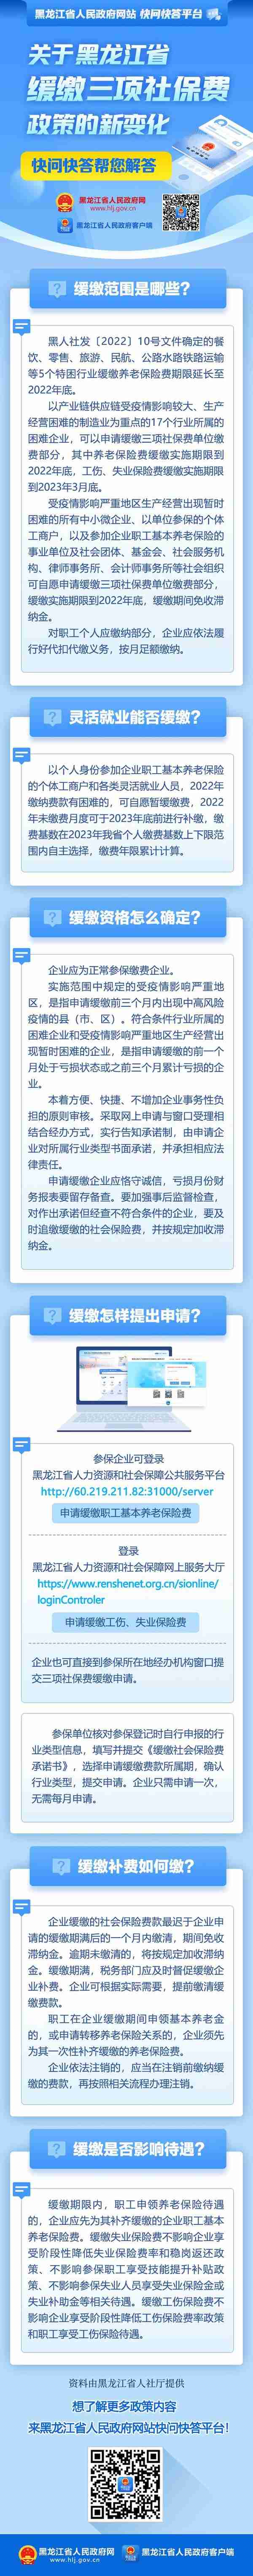 关于黑龙江省缓缴三项社保费政策的新变化，快问快答帮您解答